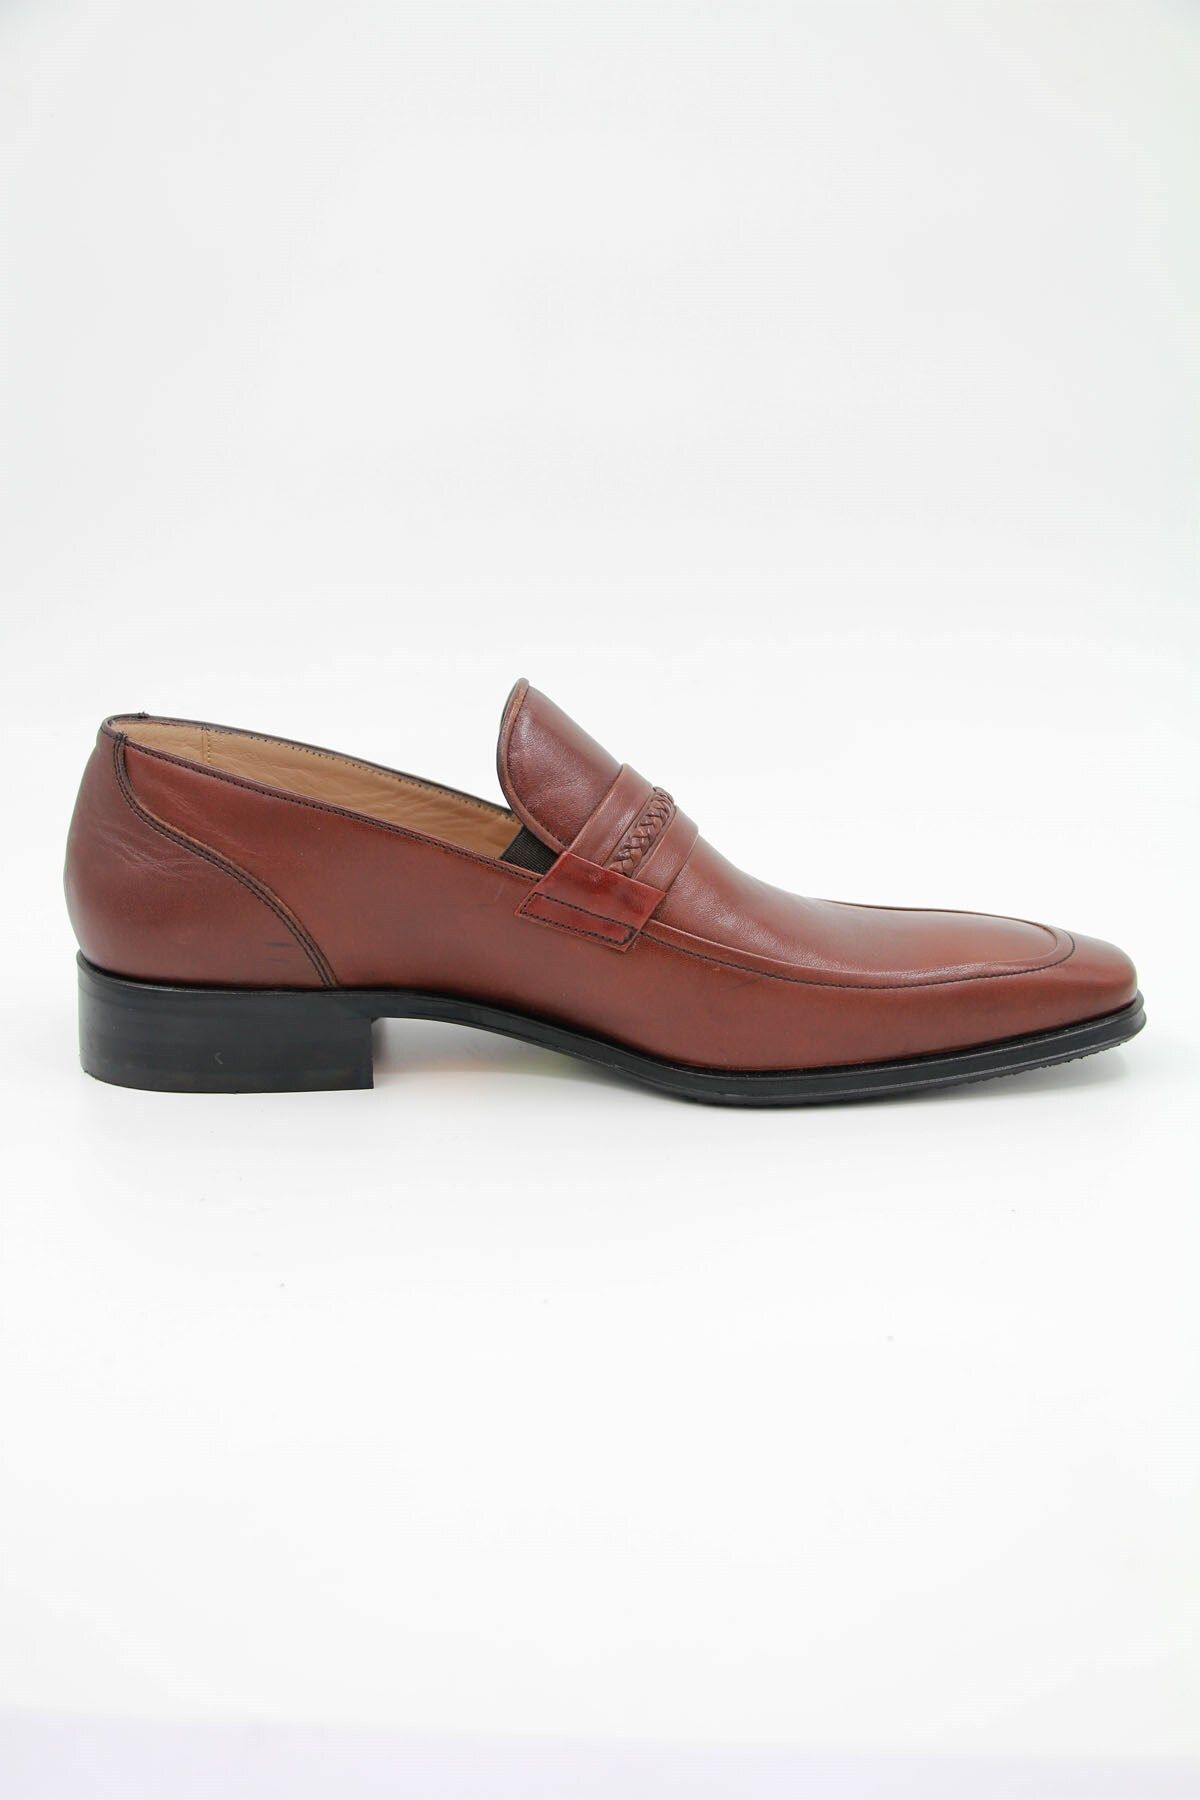 Nevzat Onay 7326-172 Erkek Klasik Ayakkabı - Kahverengi